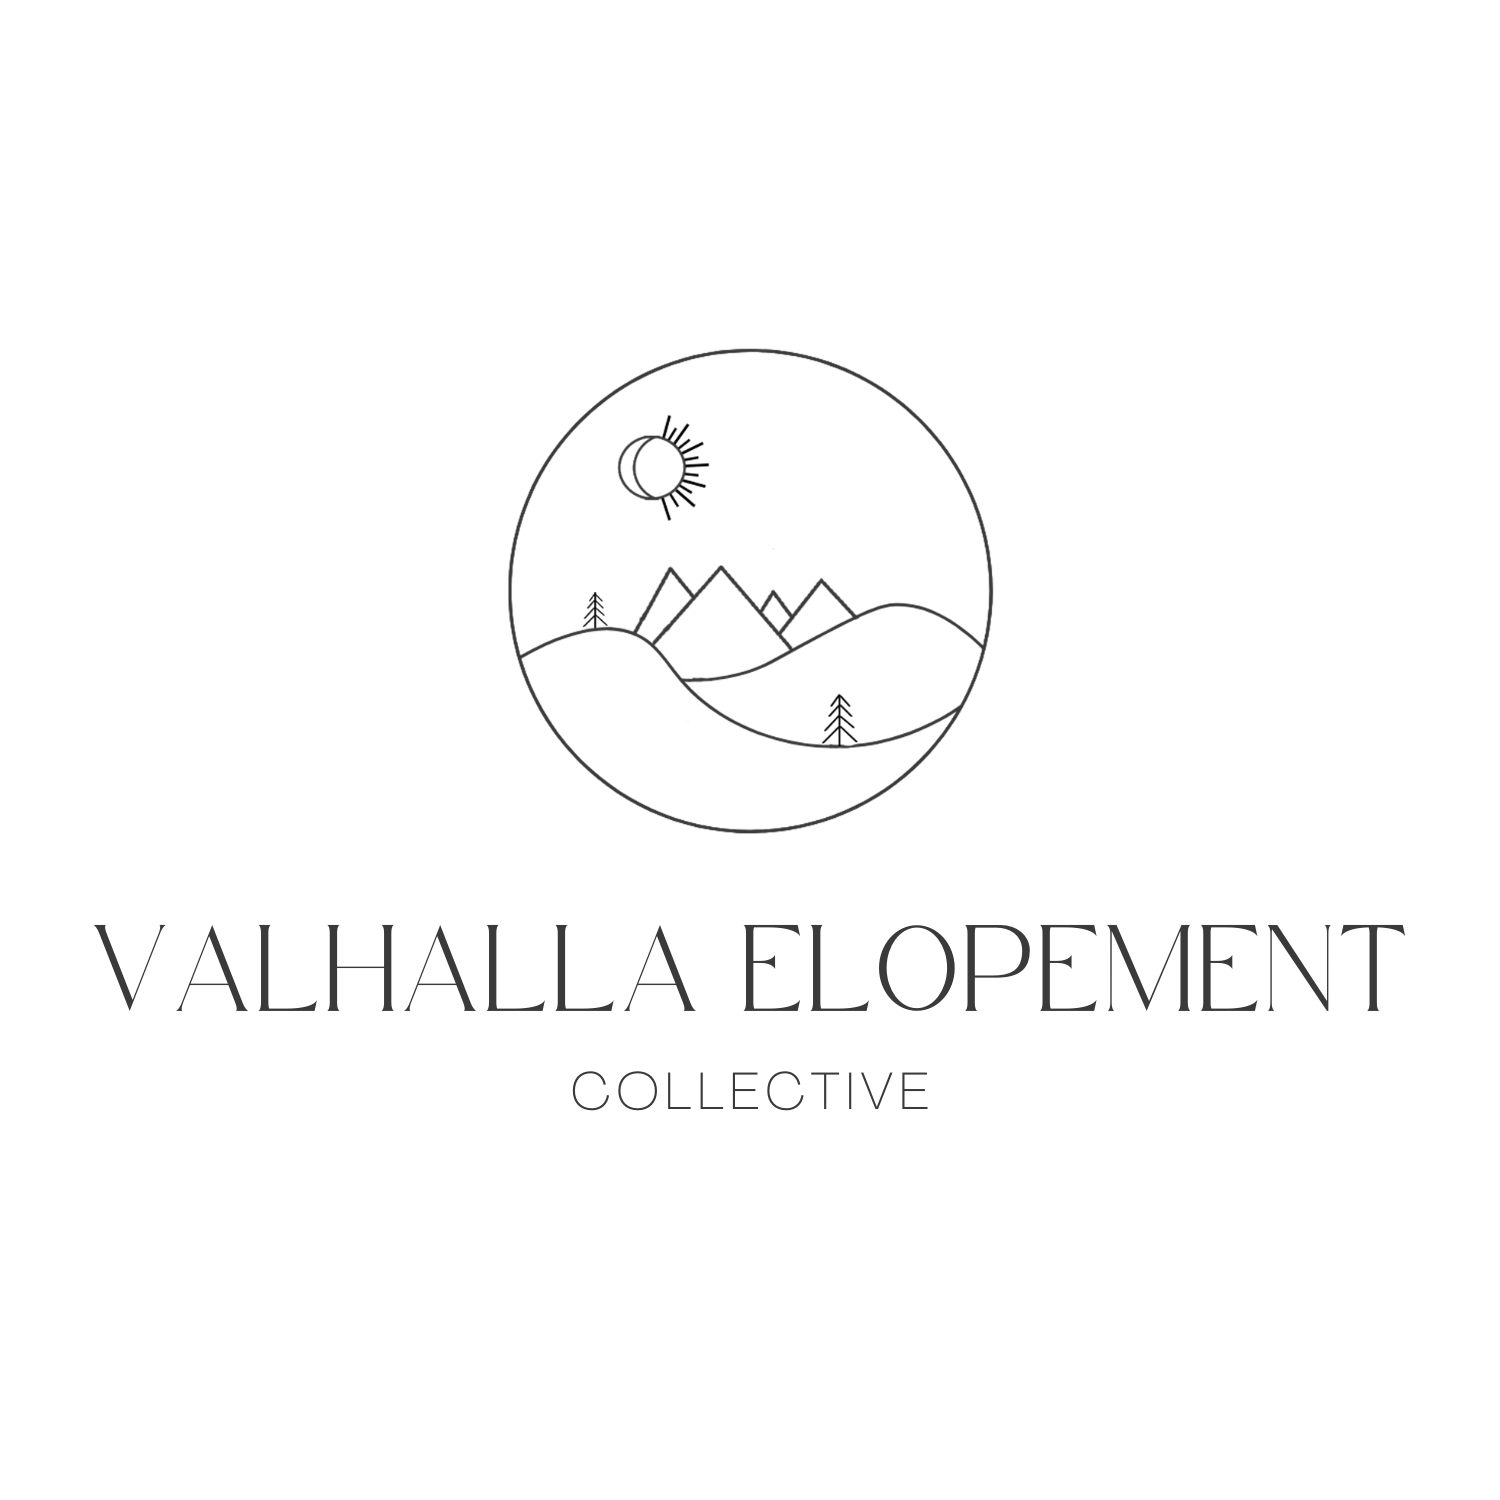 Valhalla Elopement Co.